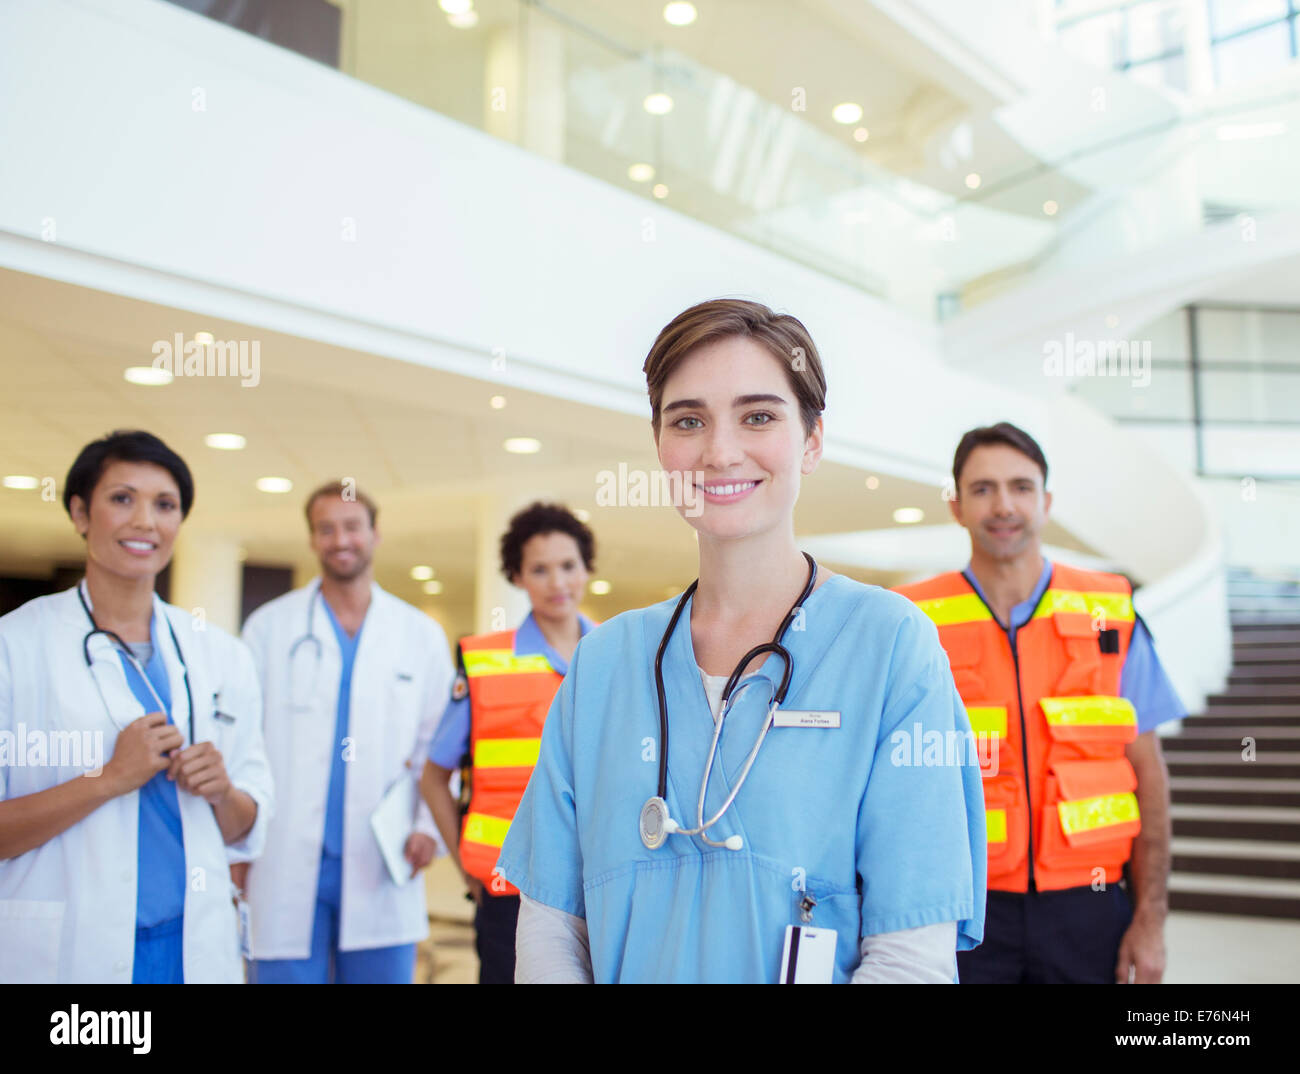 Ärzte, Krankenschwestern und Sanitäter, die lächelnd im Krankenhaus Stockfoto